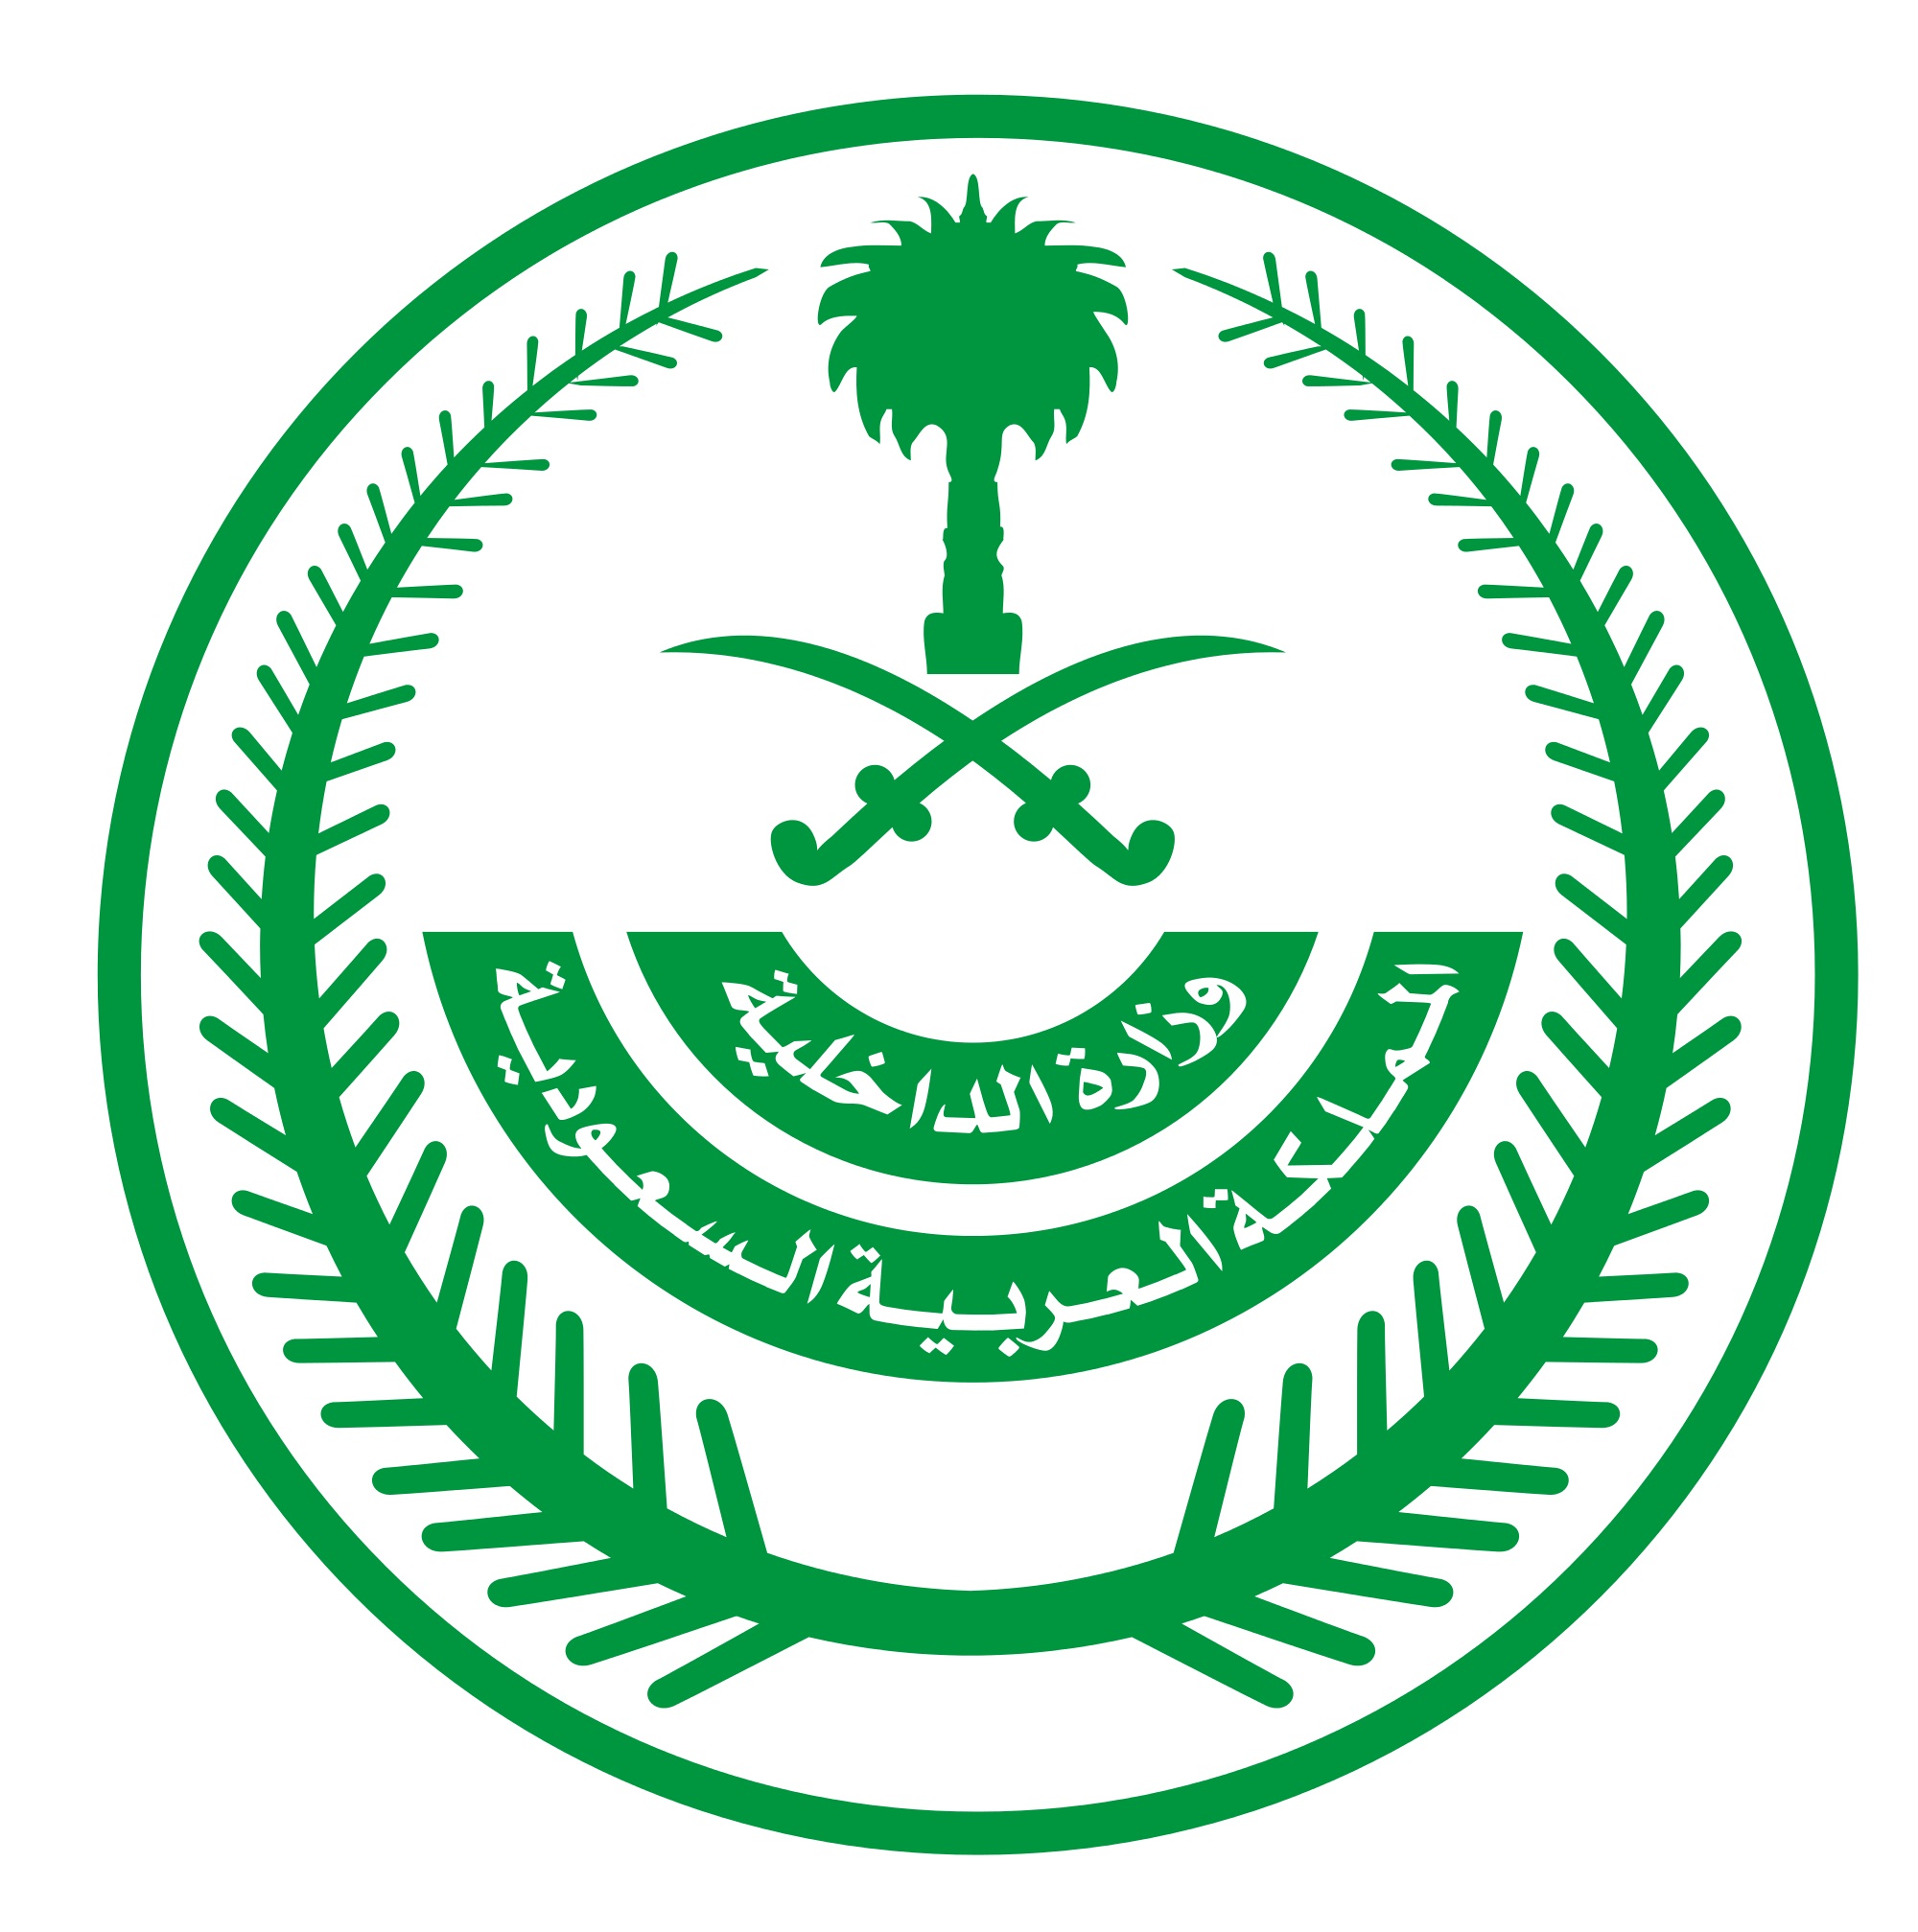   الداخلية السعودية : مقتل جندي وإصابة 5 آخرين إثر استهدافهم بقذيفة "آر بي جي" بالقطيف